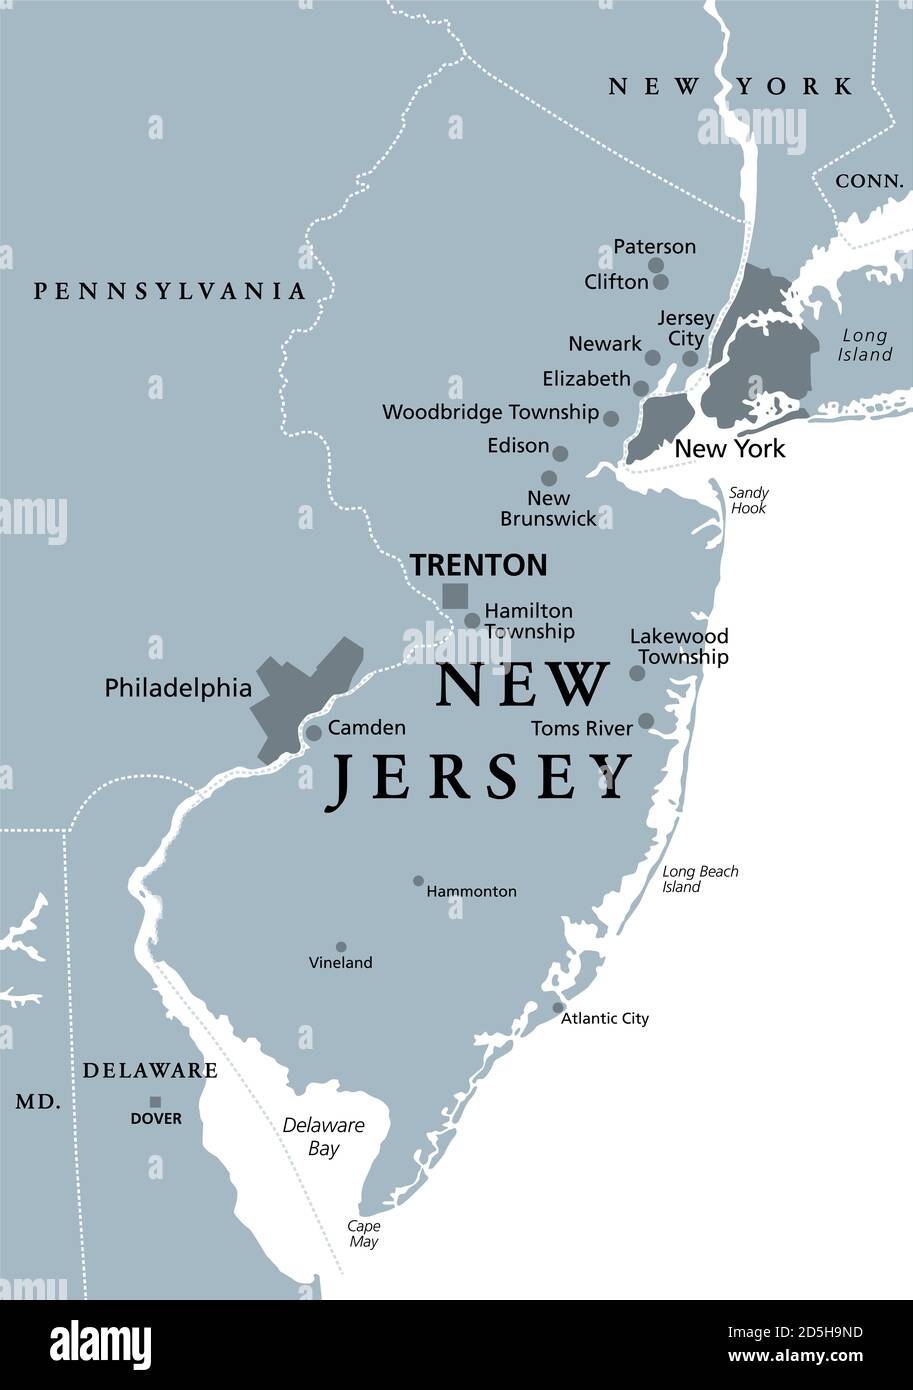 New Jersey, NJ, graue politische Landkarte mit der Hauptstadt Trenton.  Staat in der Region des Mittelatlantiks im Nordosten der Vereinigten  Staaten von Amerika Stockfotografie - Alamy